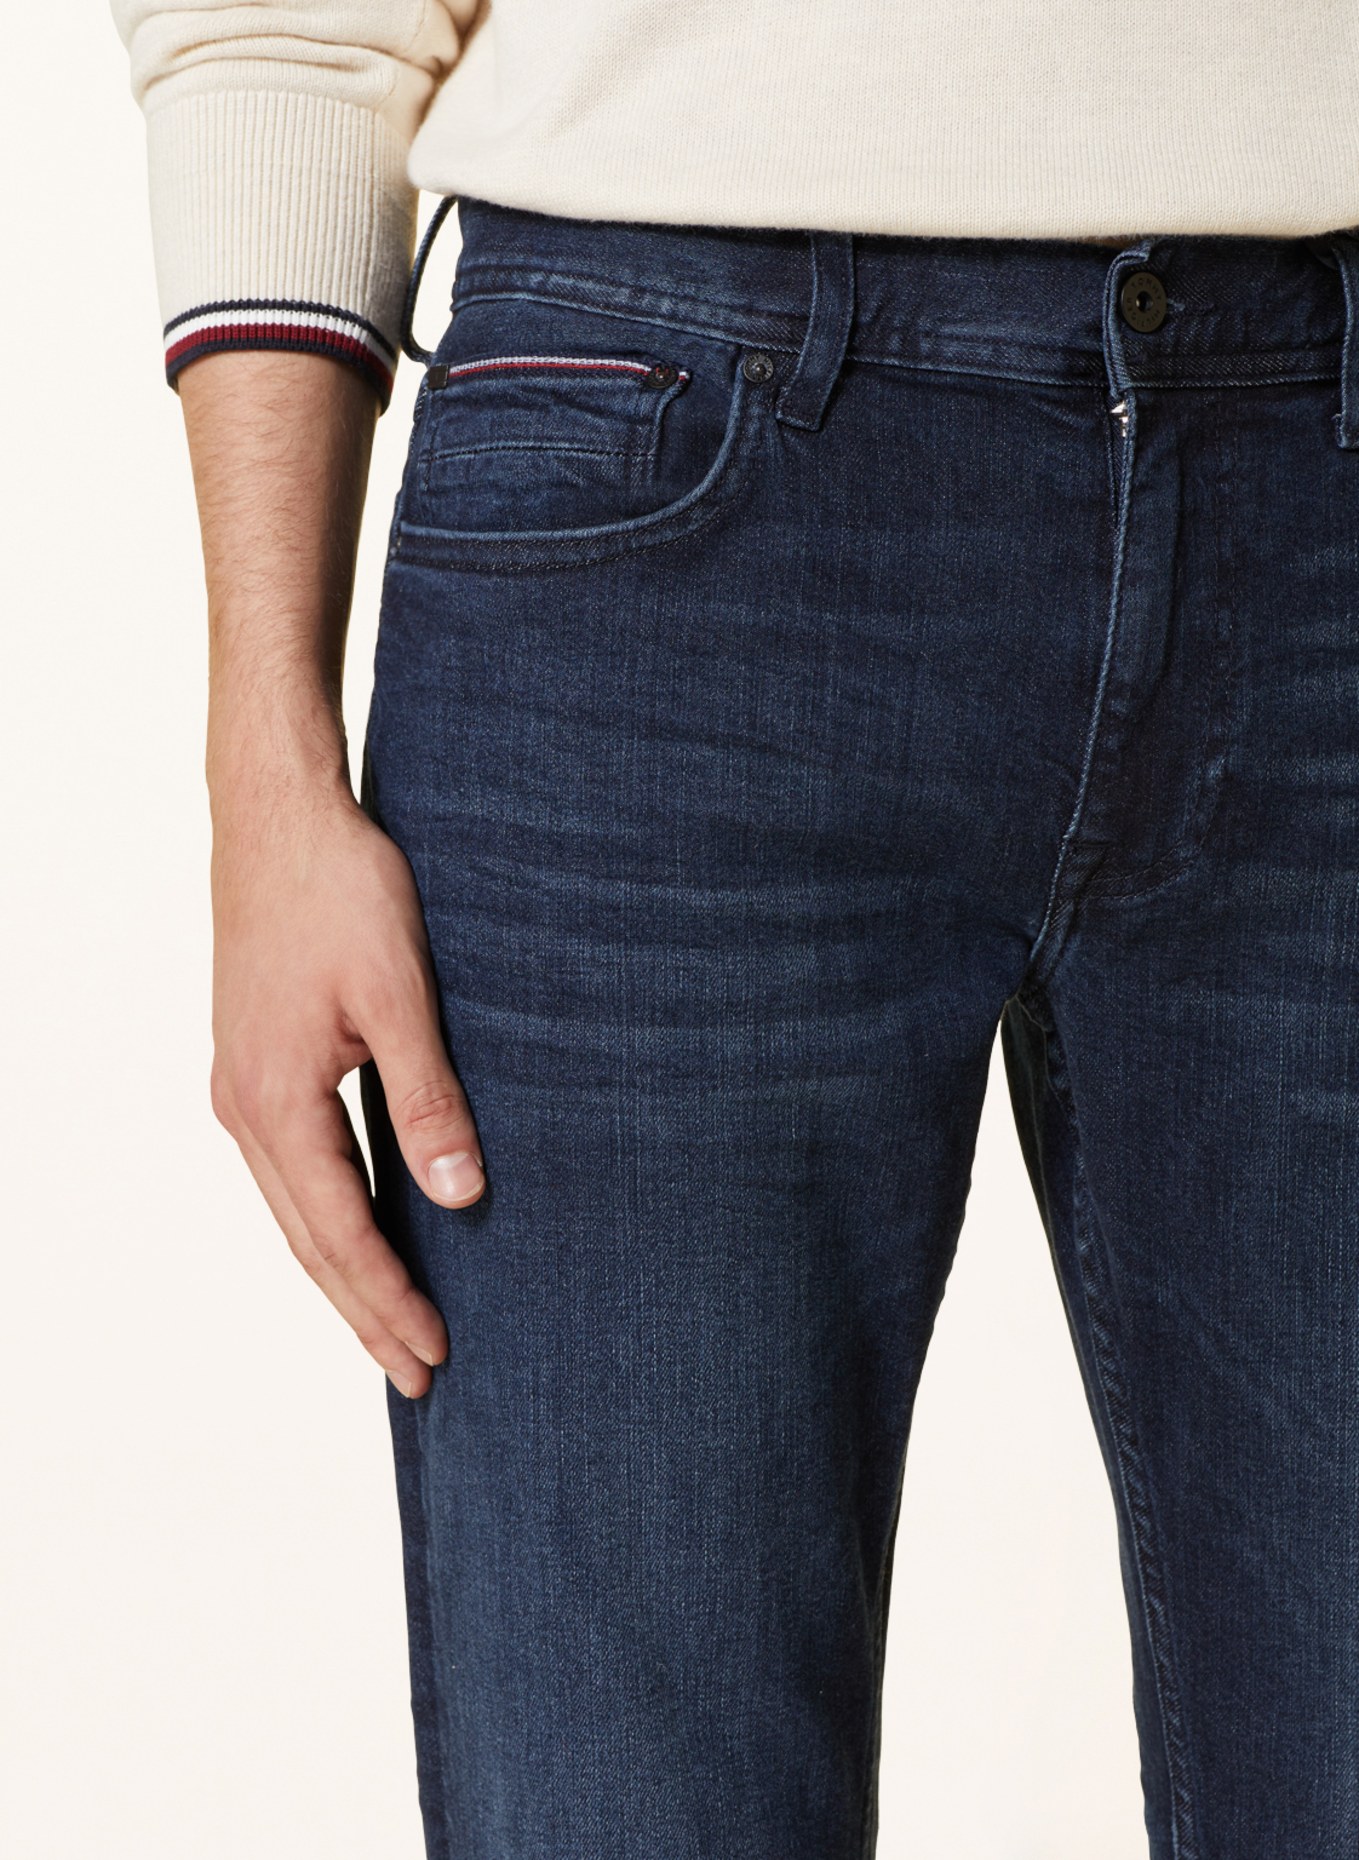 TOMMY HILFIGER Jeans DENTON Straight Fit, Farbe: 1BQ Orado Indigo (Bild 5)